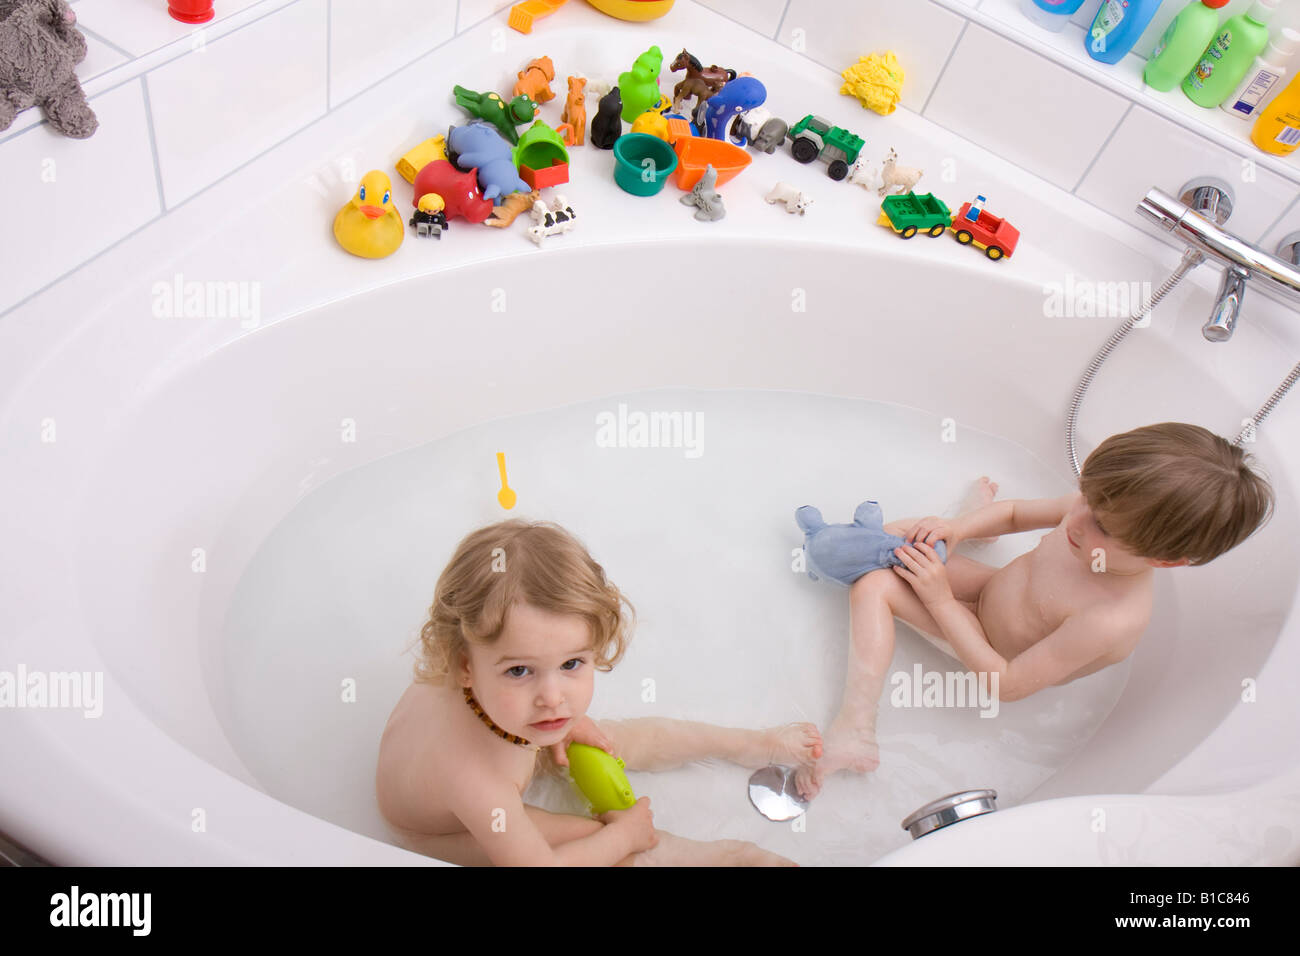 Kleine Kinder Spielen In Der Badewanne Stockfotografie Alamy